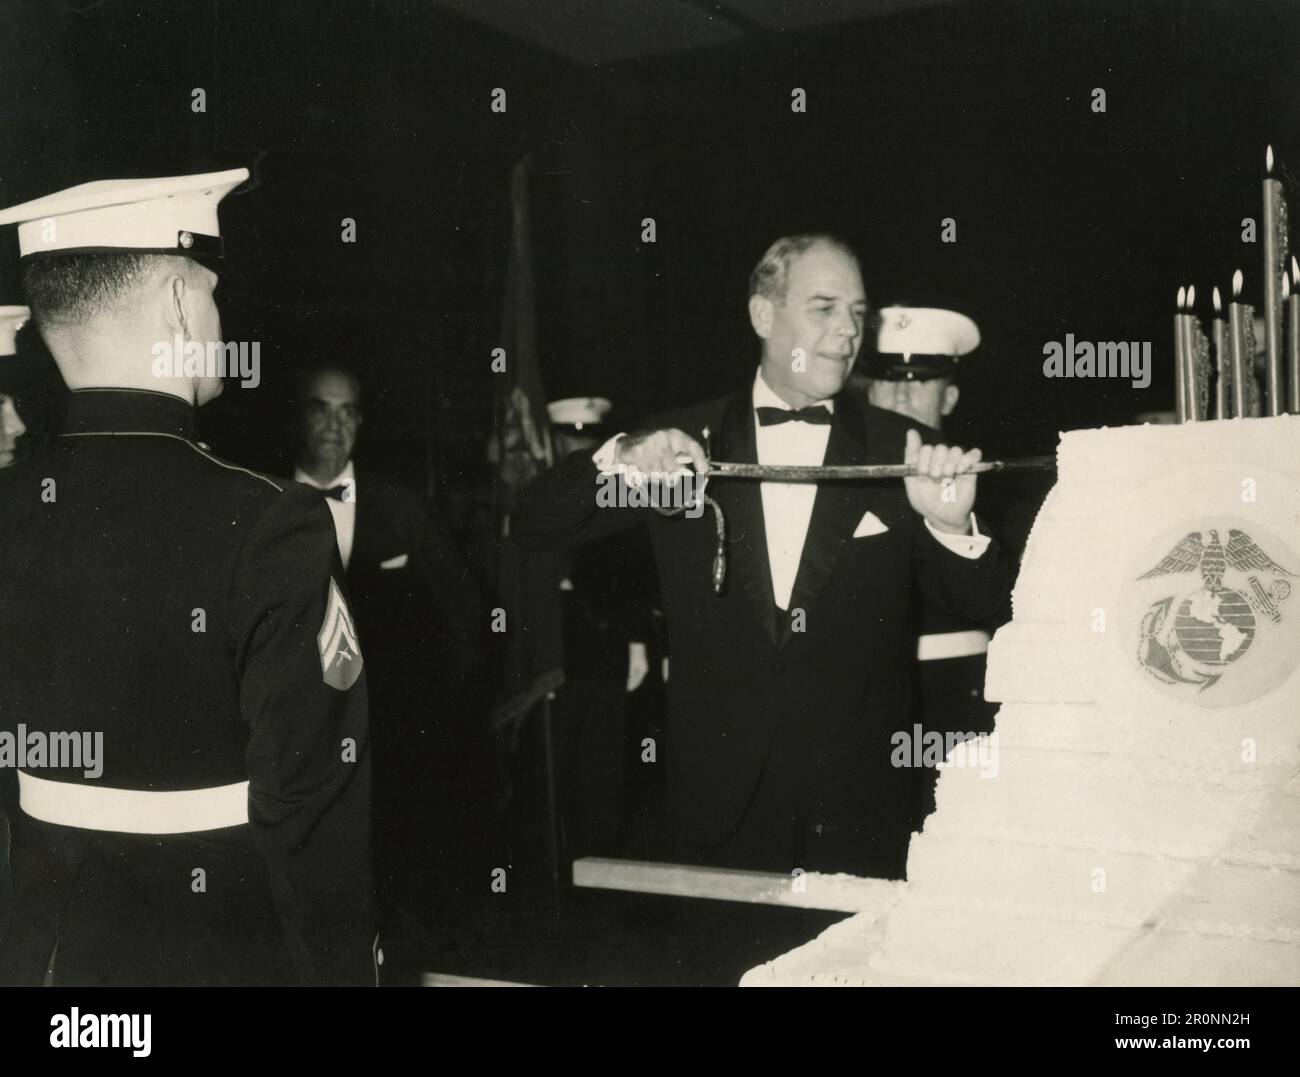 El embajador ESTADOUNIDENSE Frederick Reinhardt como invitado de honor corta el tradicional pastel de cumpleaños que celebra el 190th cumpleaños del Cuerpo de Infantería de Marina, 1965 Foto de stock